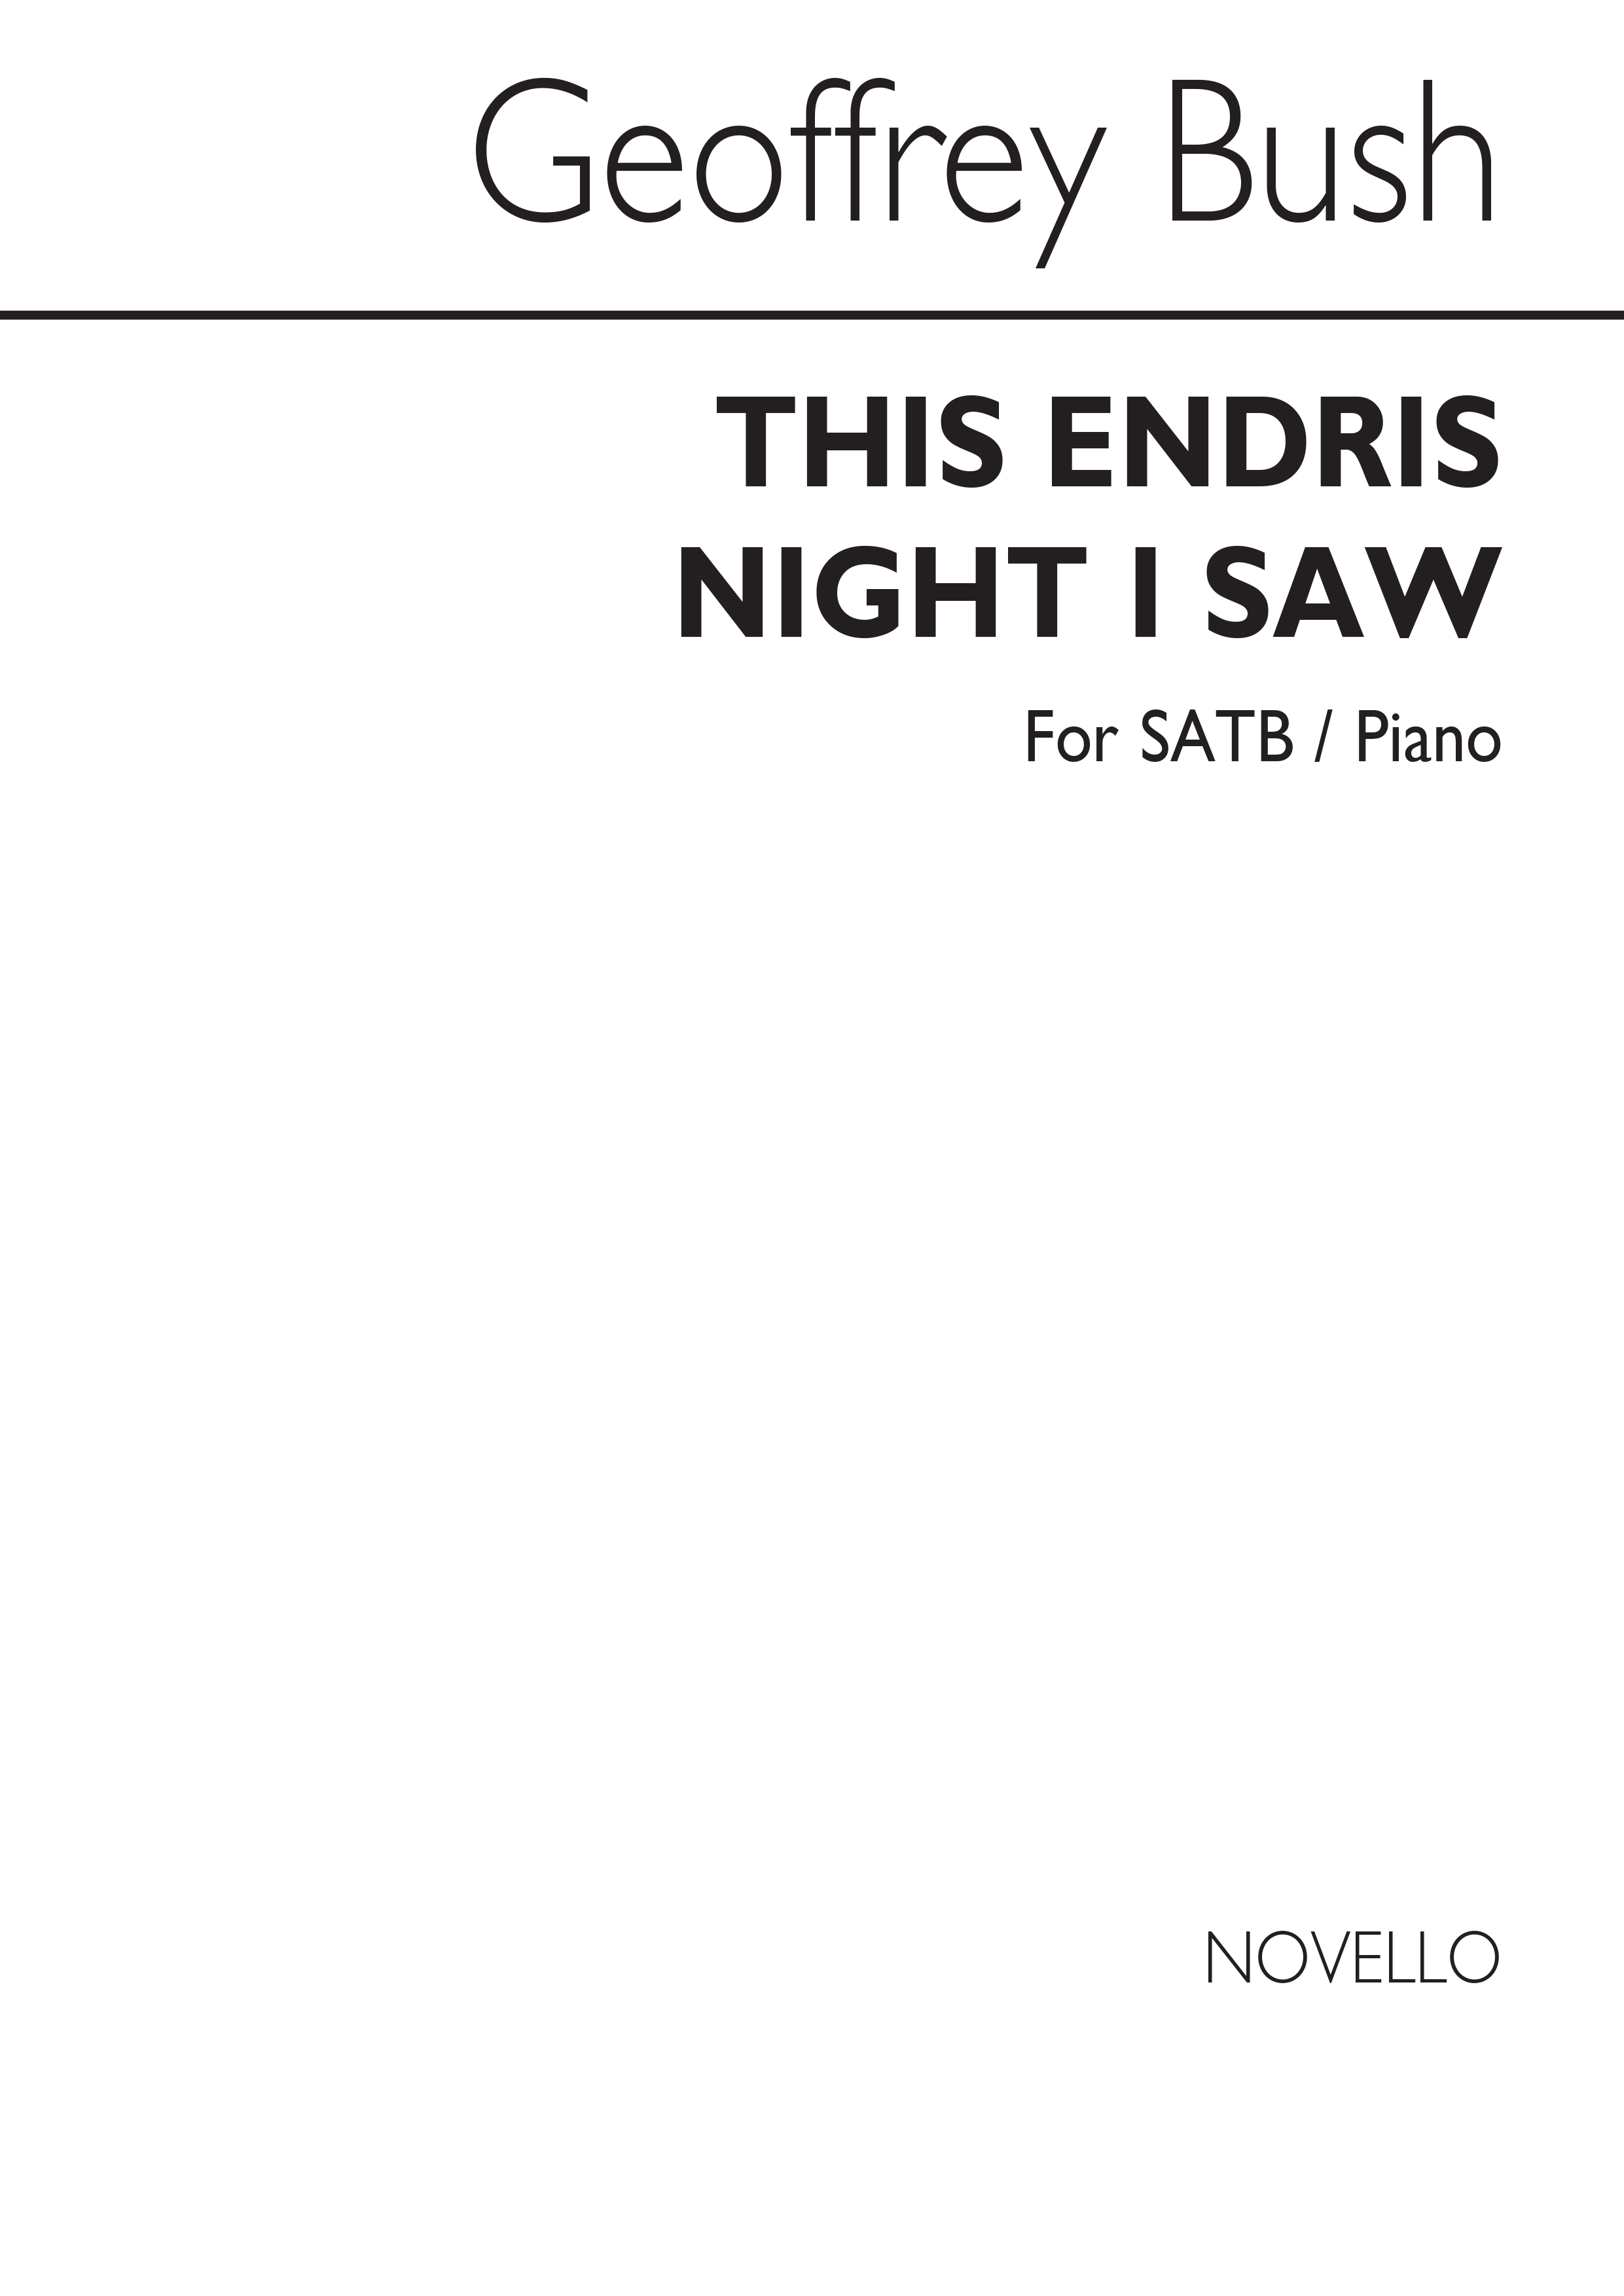 Geoffrey Bush: This Endris Night I Saw (SATB/Piano)